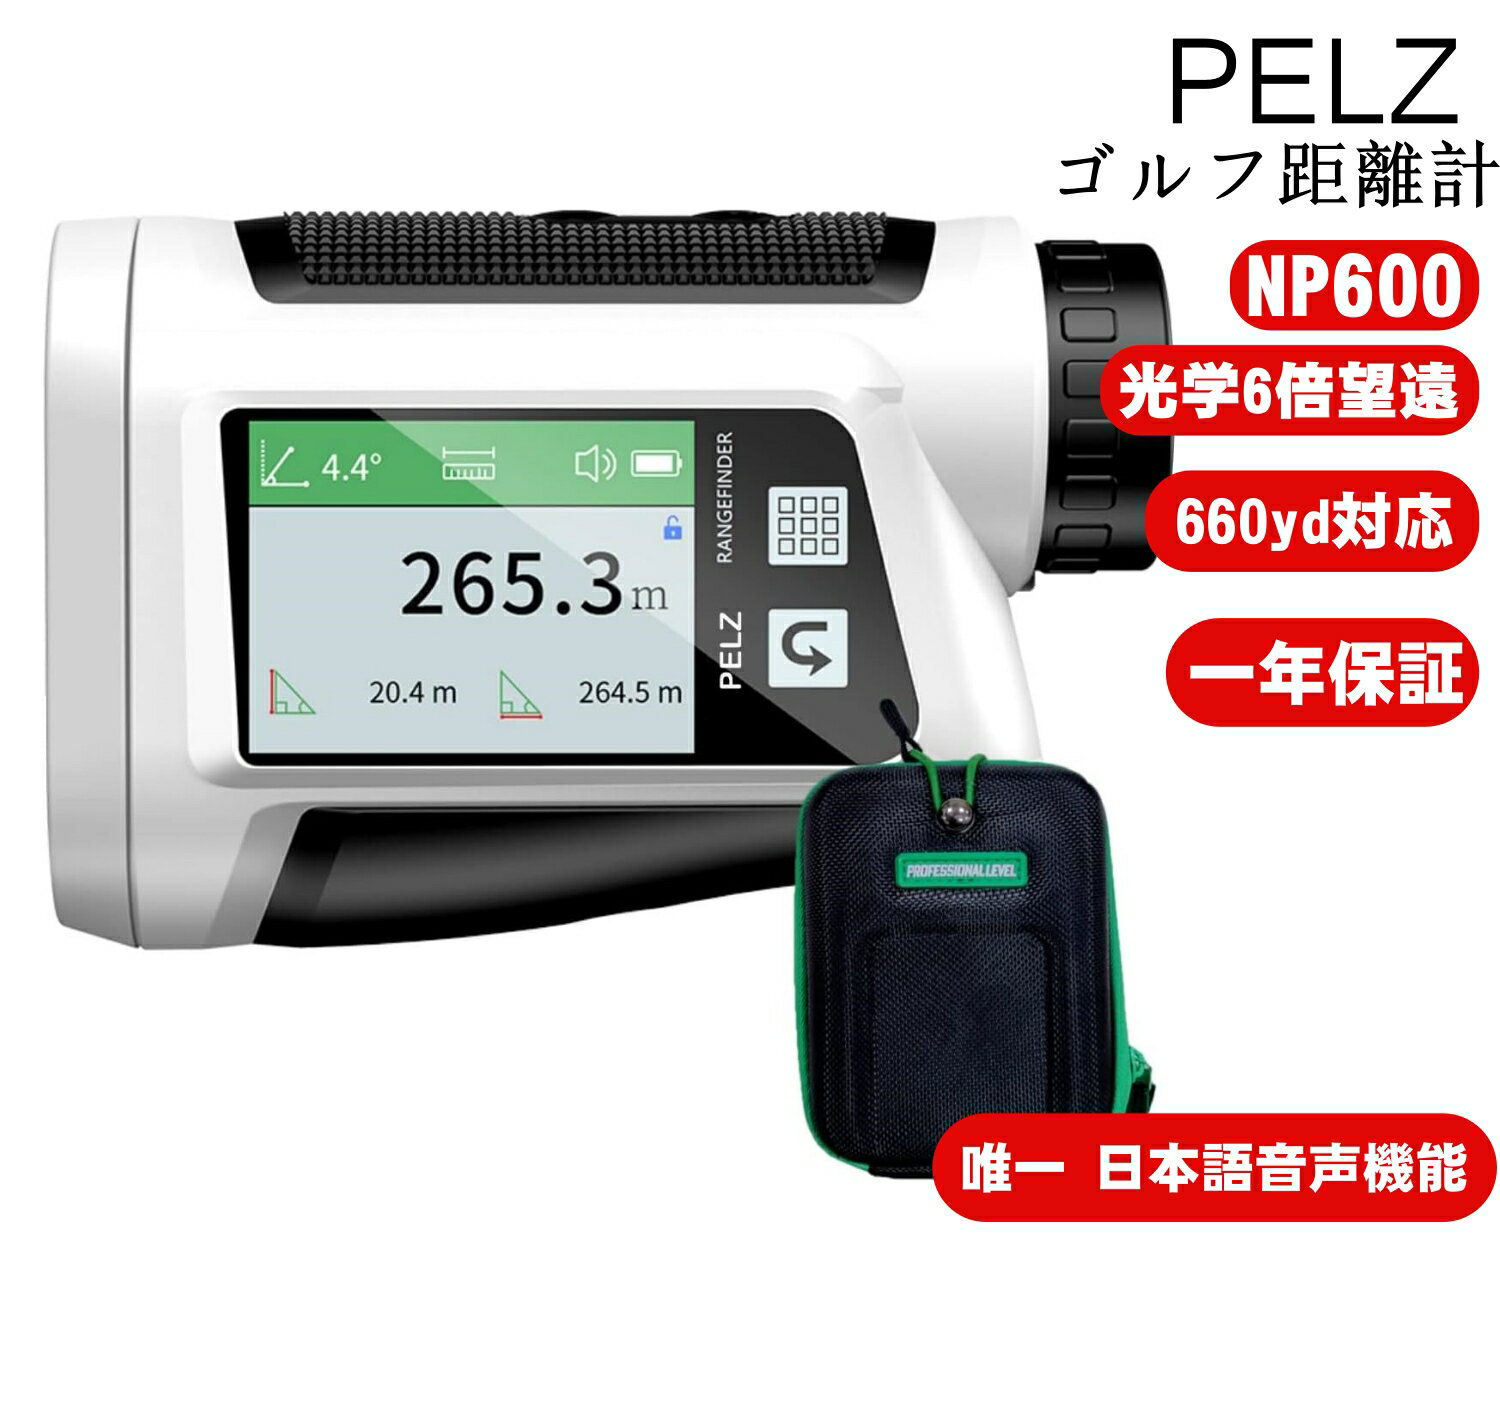 【唯一 日本語音声機能 】 PELZ ゴルフ 距離計 距離測定器 660yd対応 光学6倍望遠 競技対応 データ記憶可能 IP54防水仕様 直線/高度/垂直高低差/速度/体積/面積測定 超軽量 ケース付き 日本語説明書 保証1年